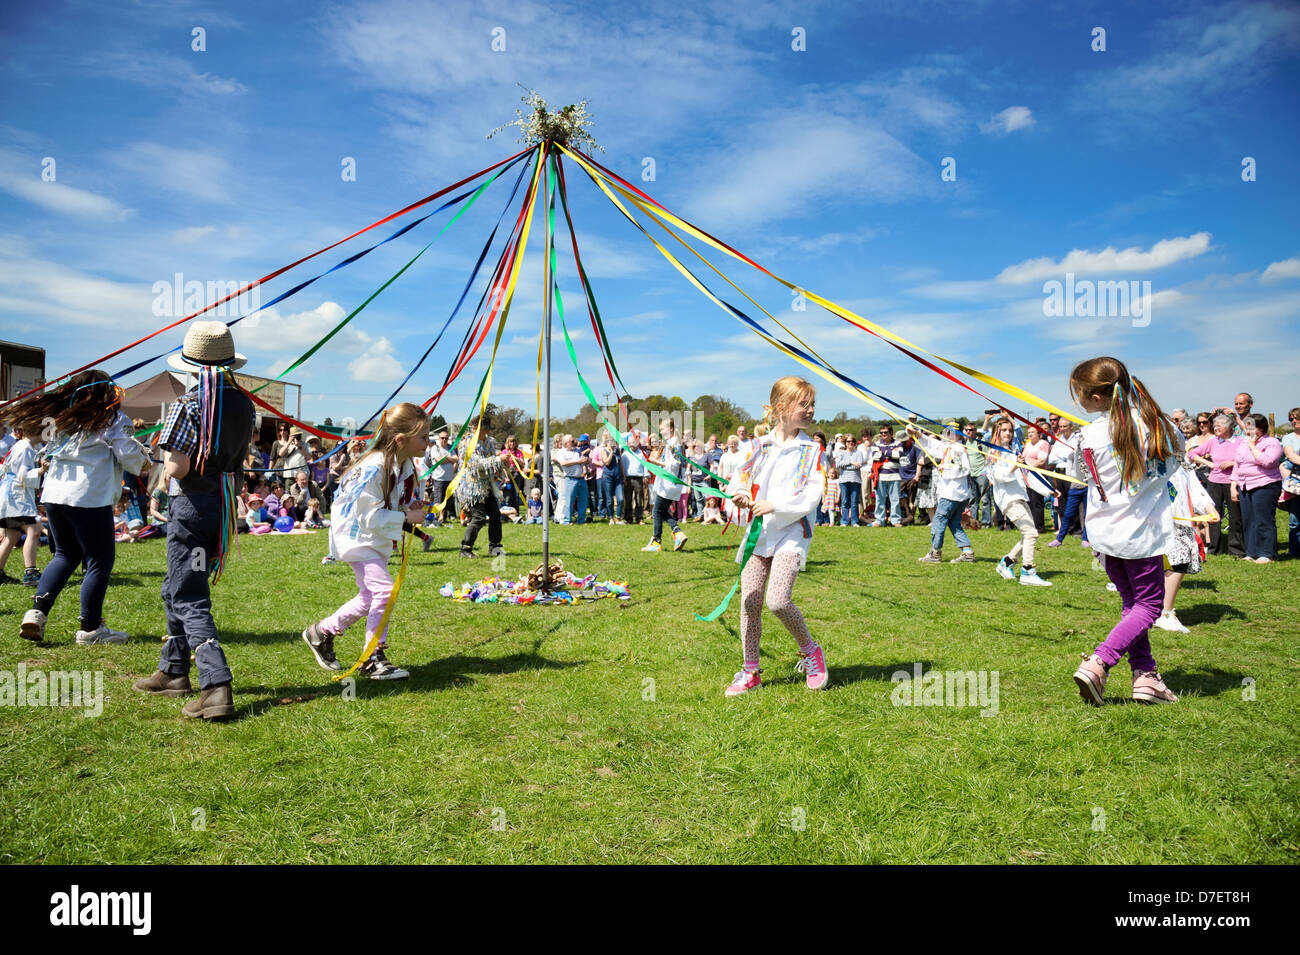 Les enfants de l'École de la danse autour du mât, Dilwyn show, Herefordshire, Angleterre. Filles de l'école de danse avec des rubans sur la place du village. Banque D'Images